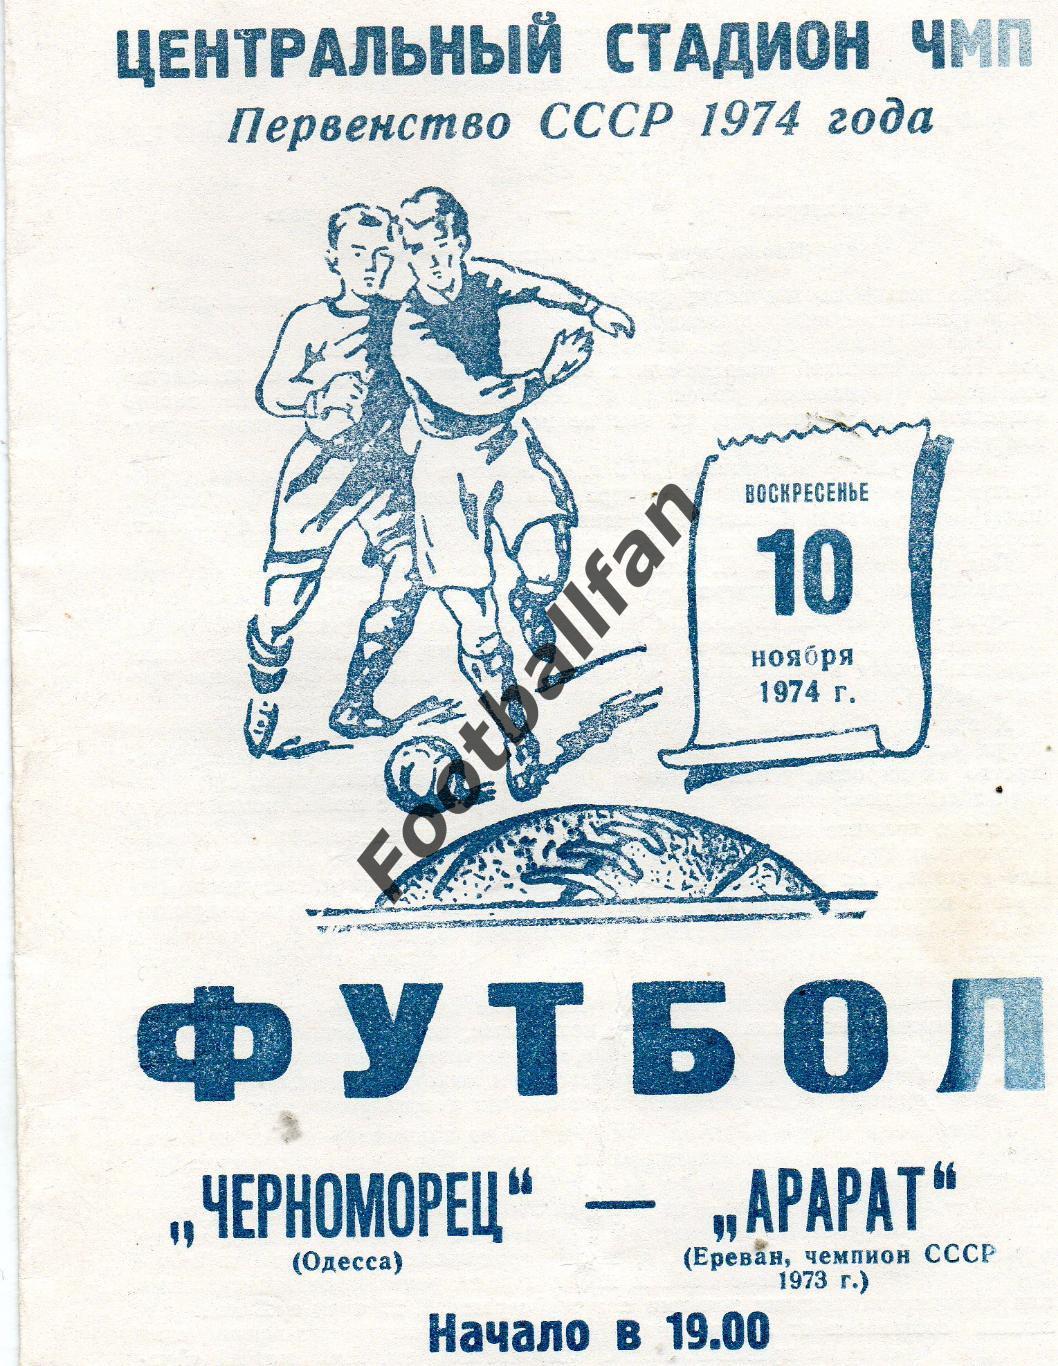 Черноморец Одесса - Арарат Ереван 10.11.1974